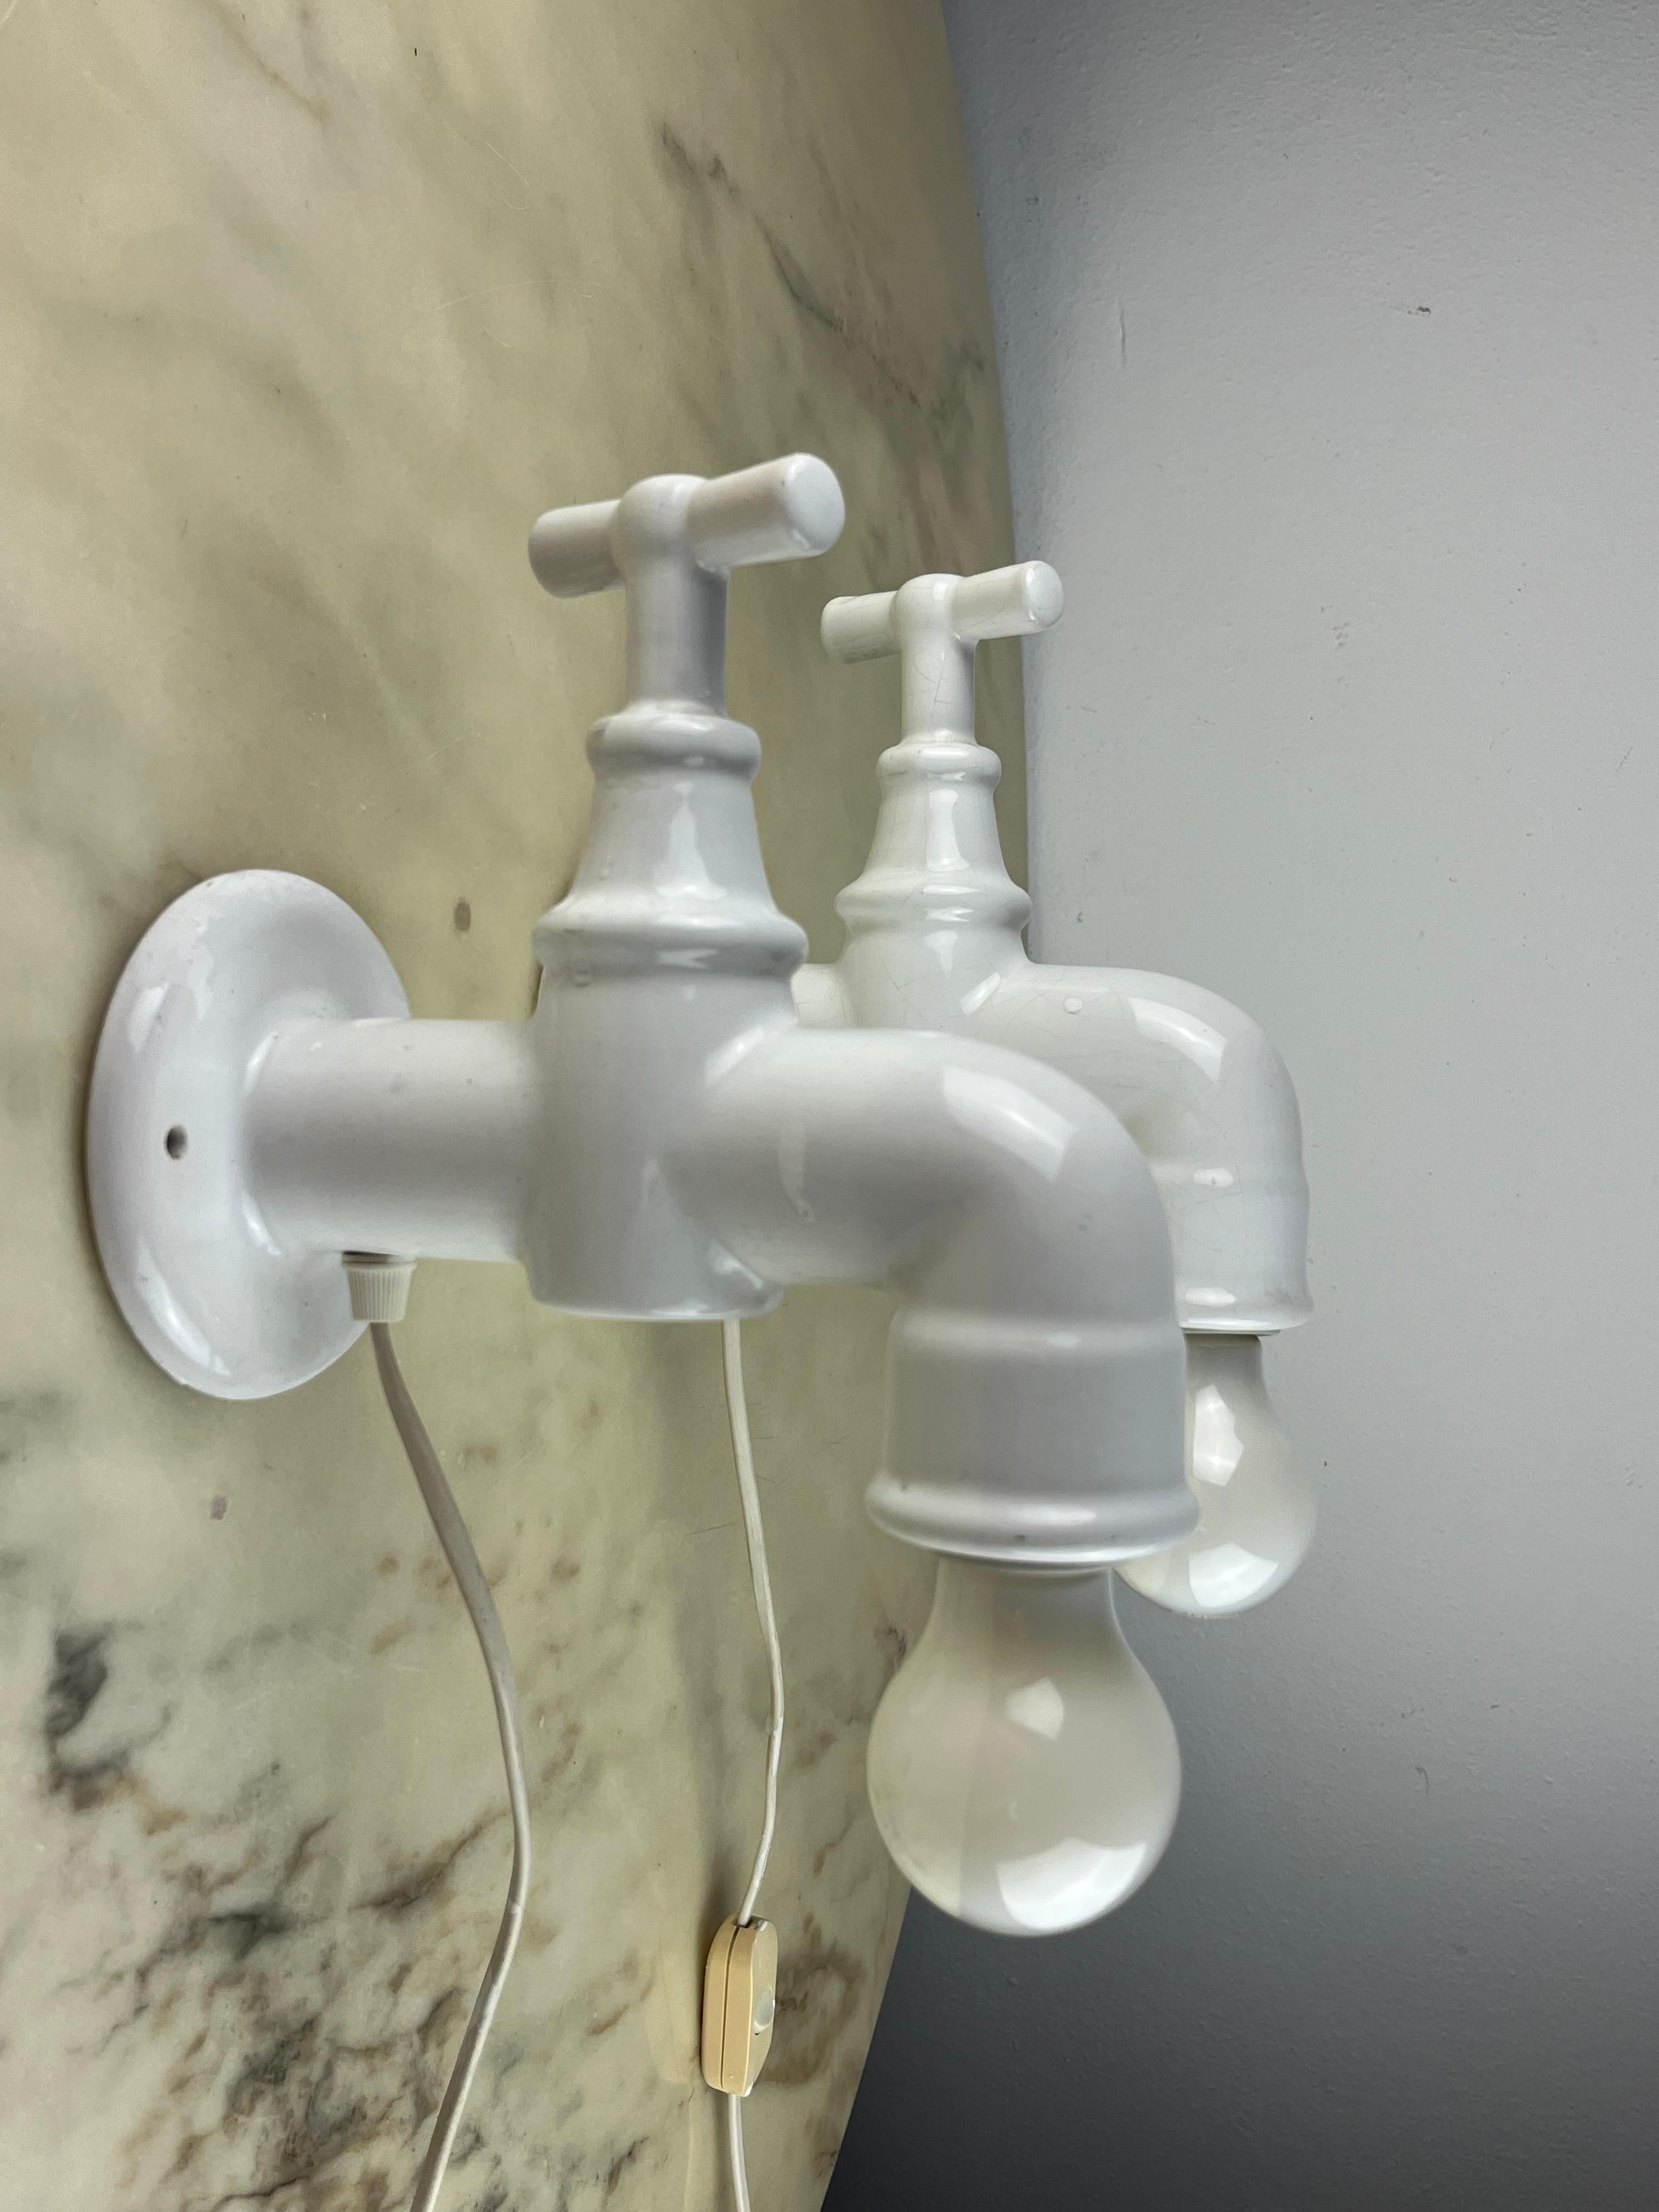 Paar Wandlampen aus weißem Porzellan, Italien, 1970er Jahre
Sie haben die Form eines antiken Wasserhahns.
Intakt und funktionsfähig (E27-Lampen).
Ausgestattet mit zeitgemäßen Schaltern und Steckern.